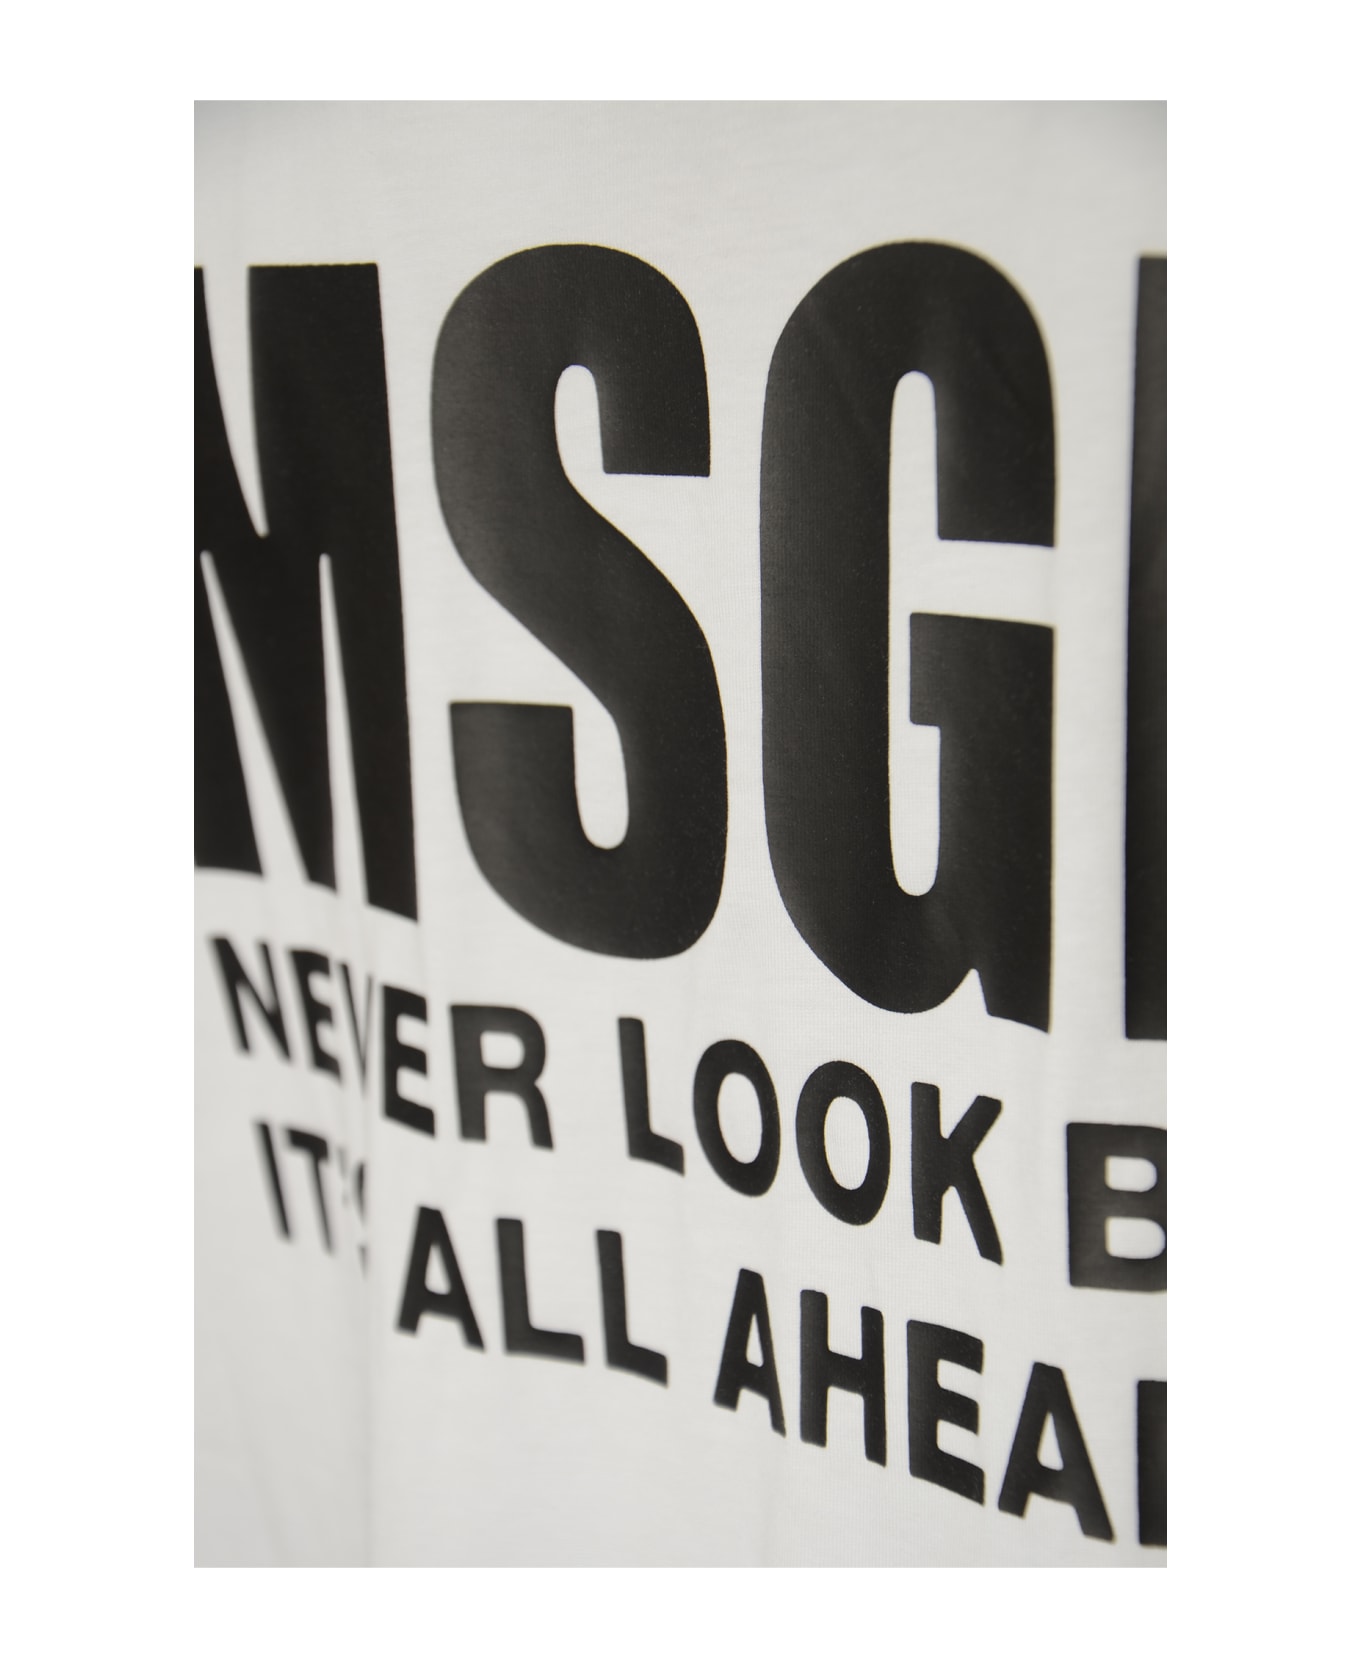 MSGM Logo T-shirt - Optical White シャツ